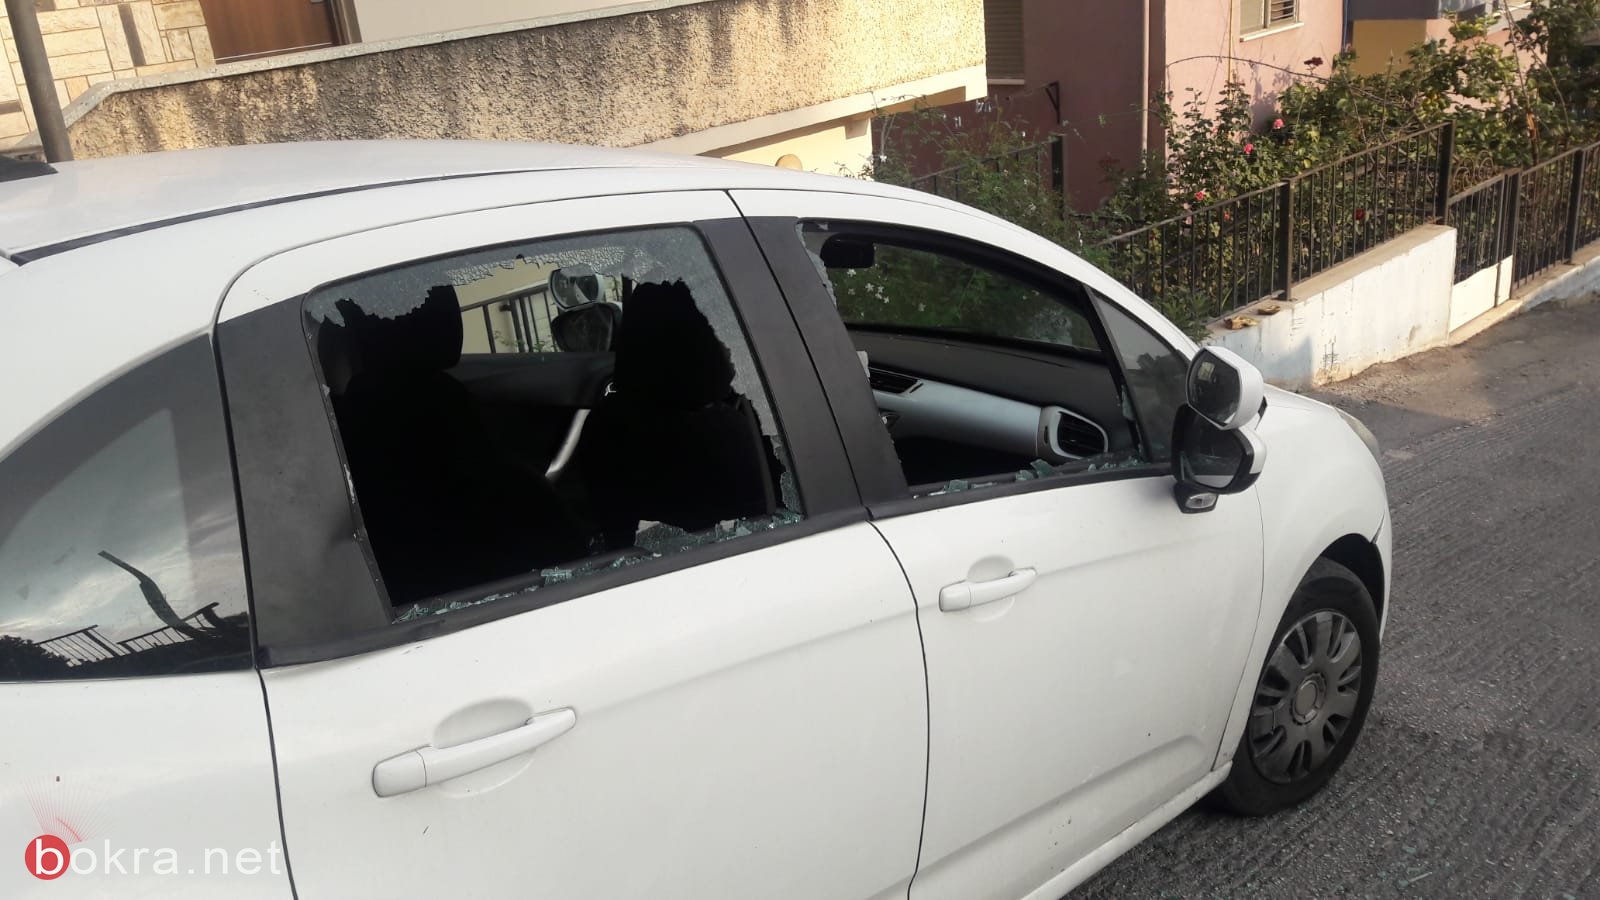 تكسير زجاج سيارة المواطن النصراوي فادي عجاوي ناشط في "ناصرتي"-1